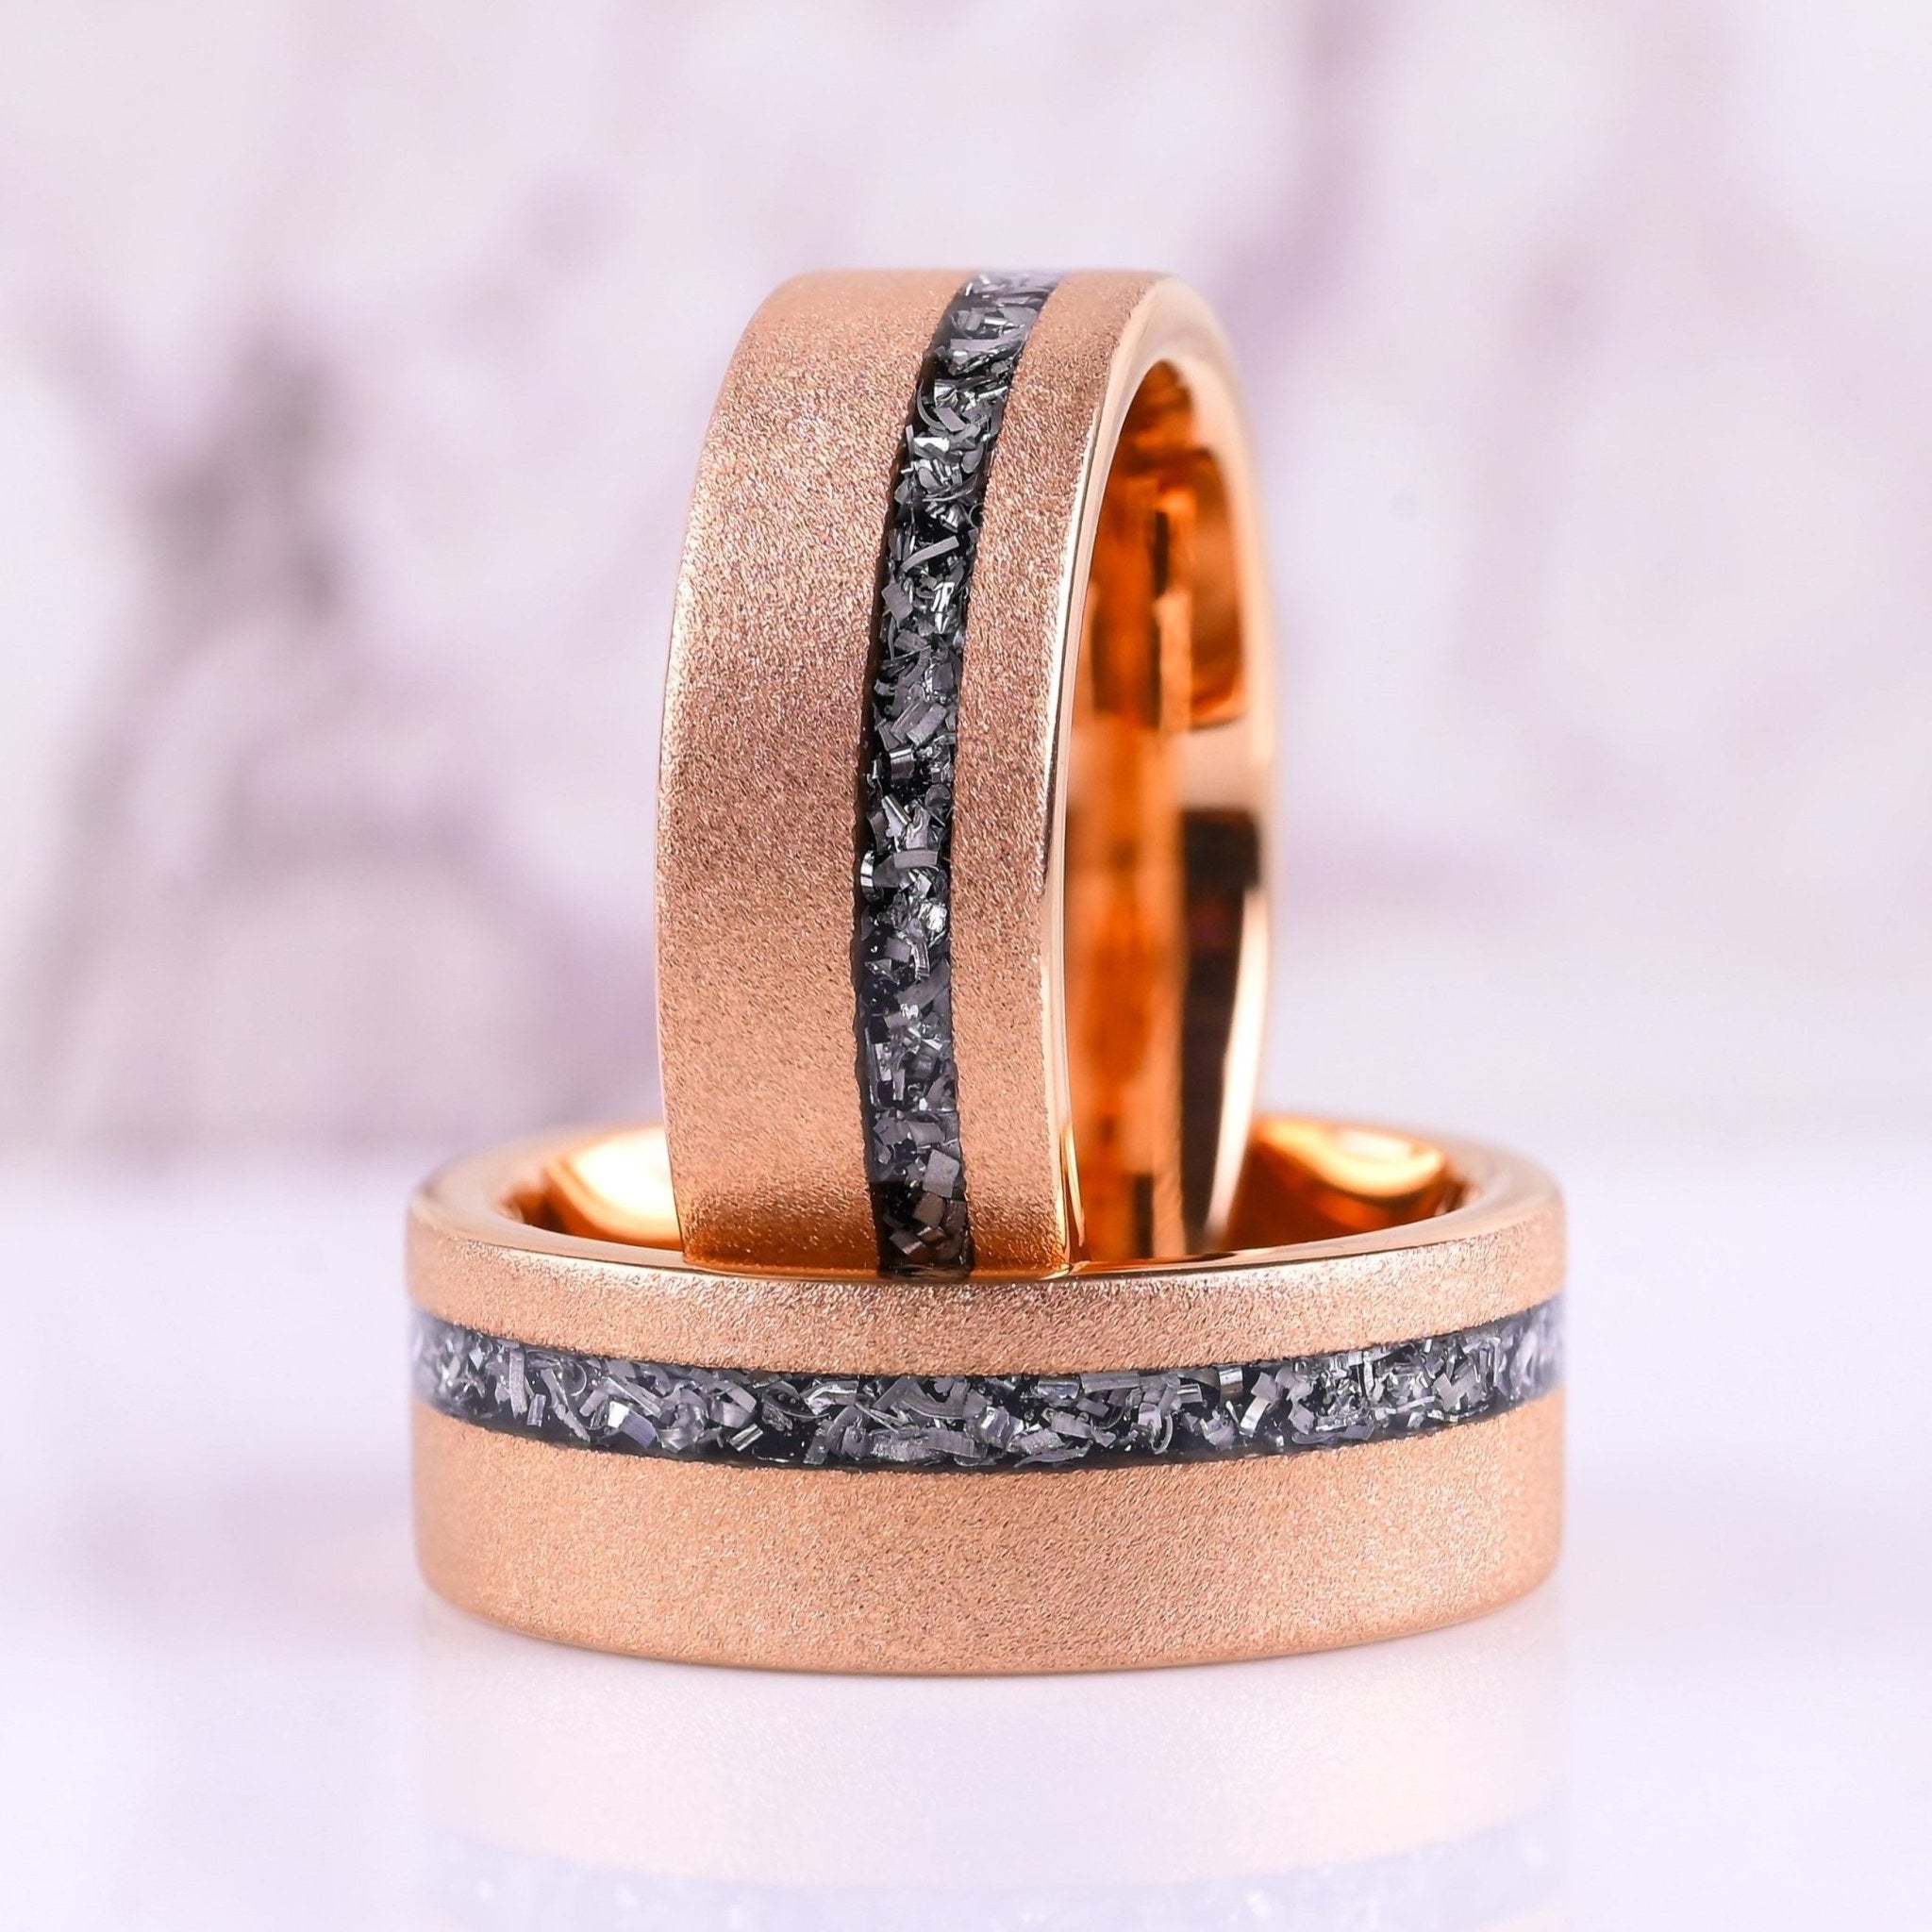 Sandblasted Rose Gold Couple Ring Set - TUNSGTEN / 925 SILVER Rings -  Meteorite Inlay - Wedding Rings